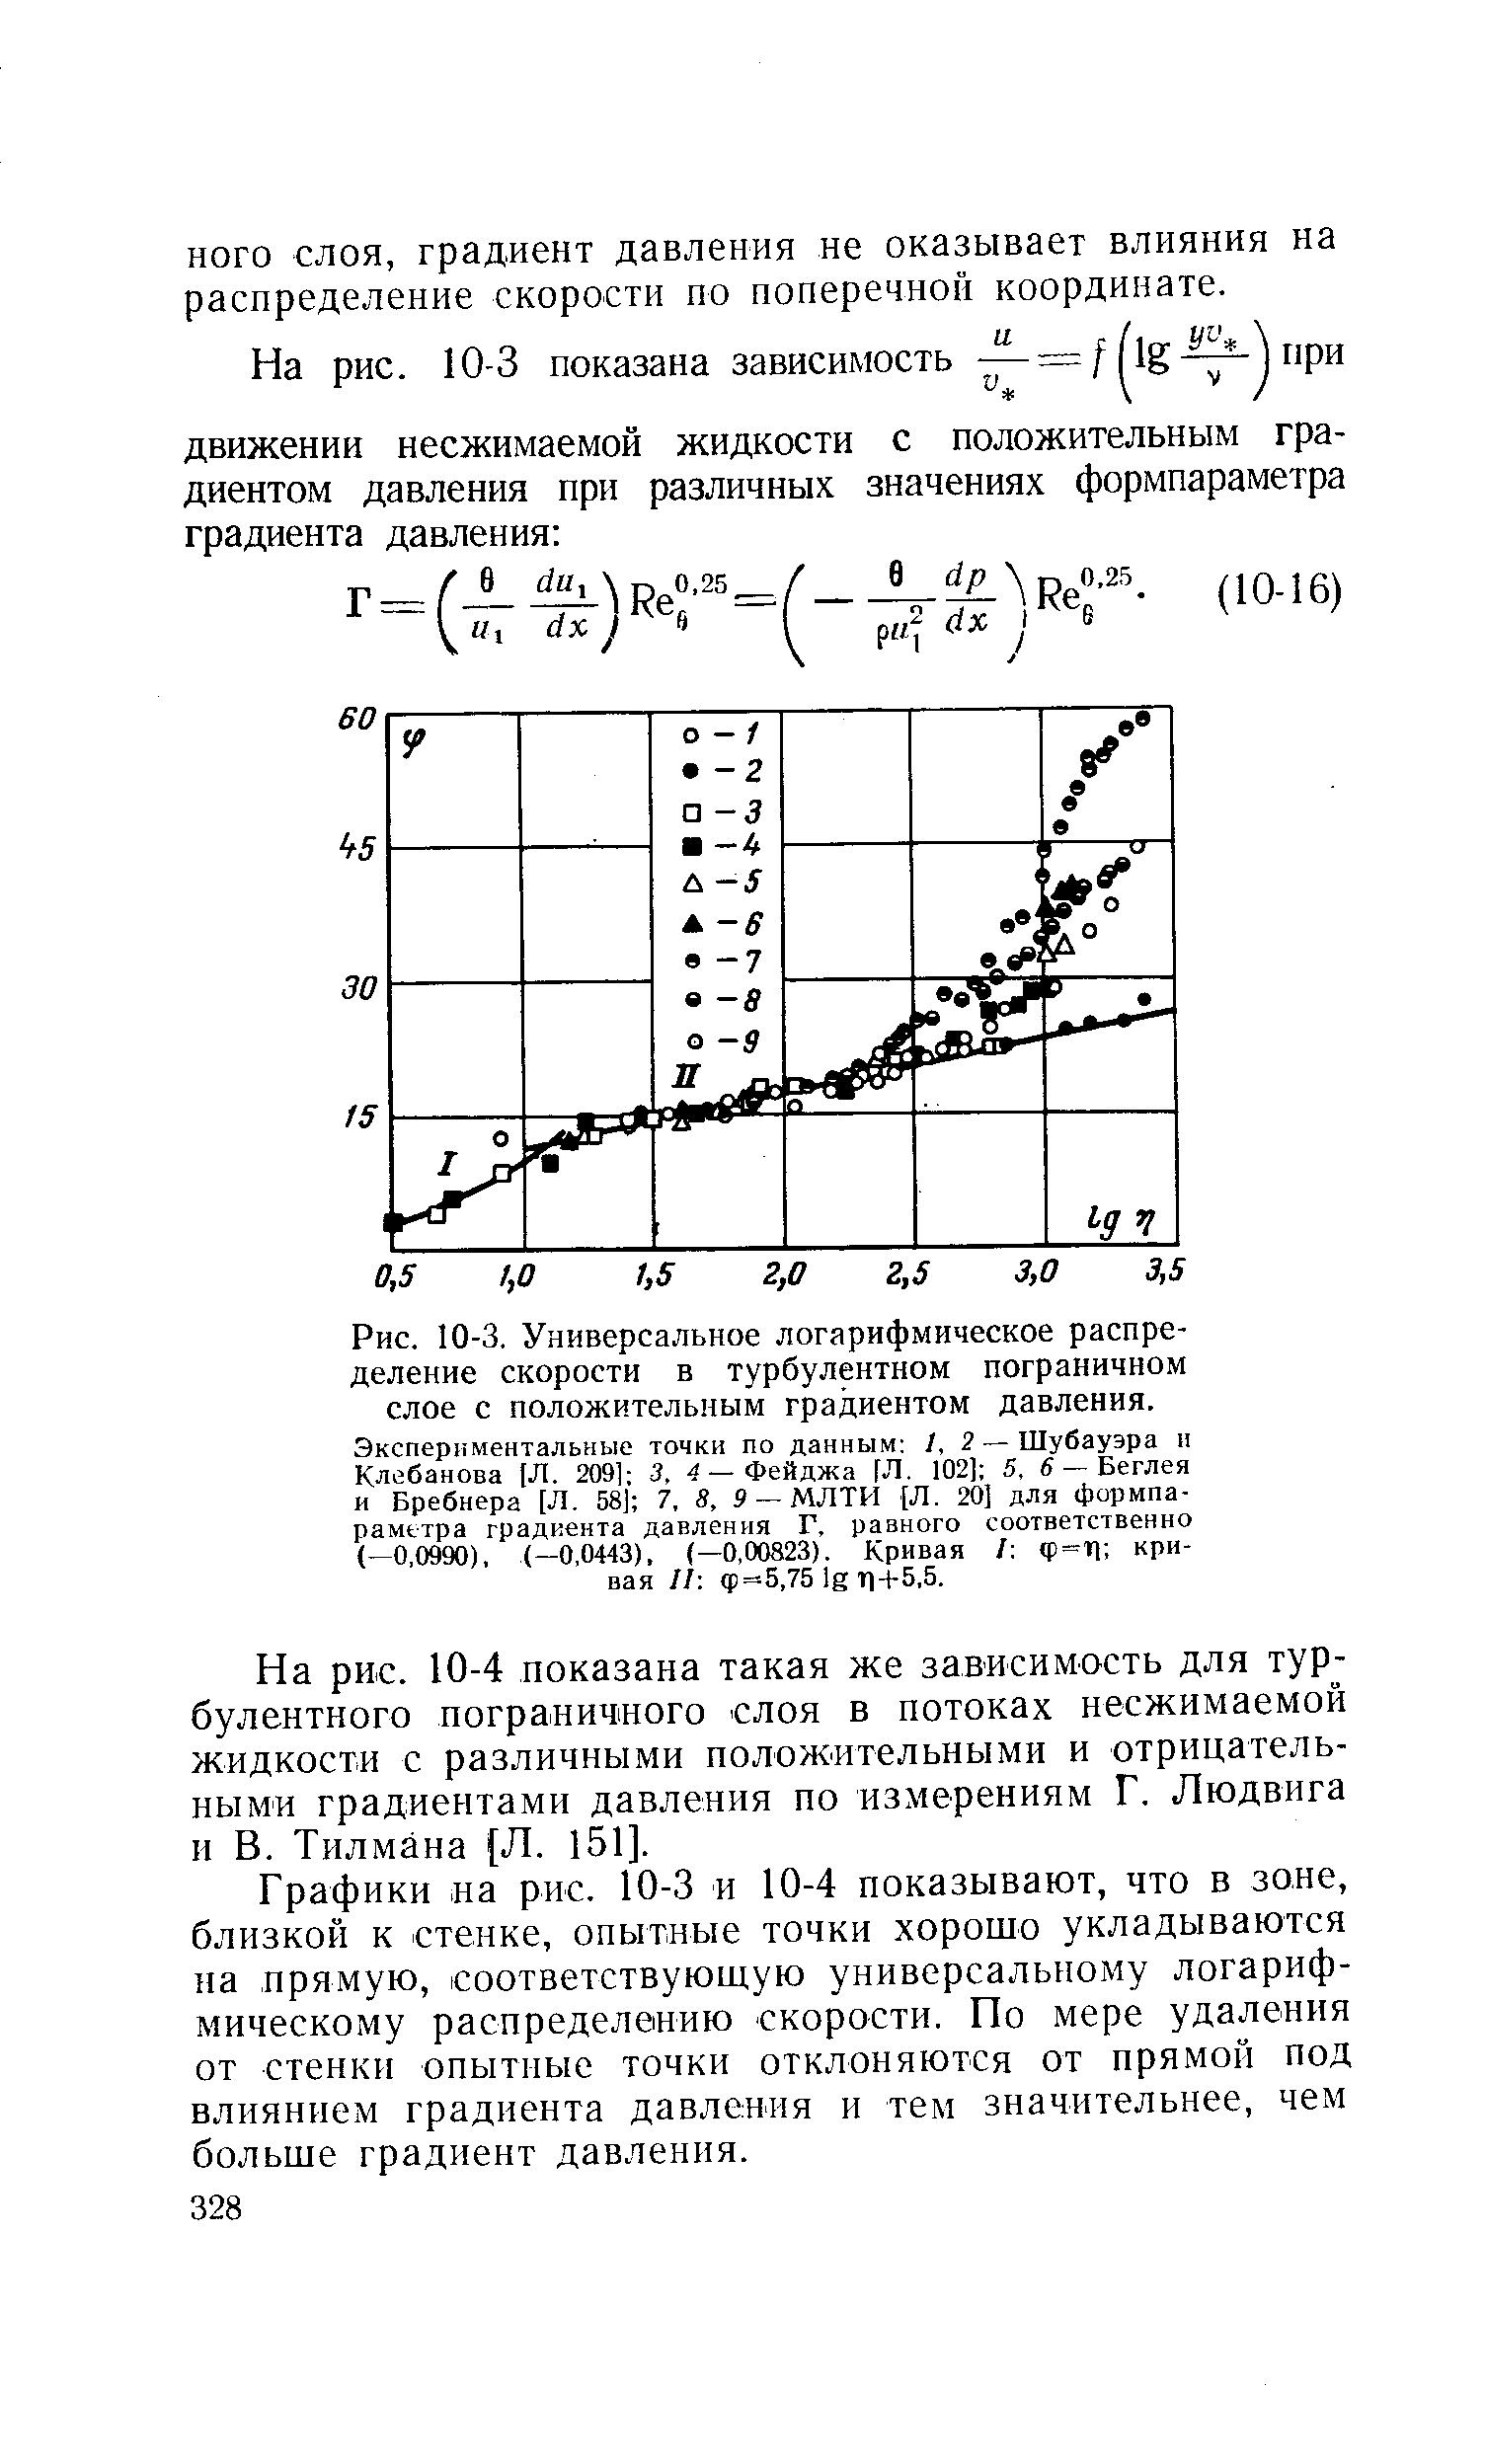 Рис. 10-3, Универсальное логарифмическое распределение скорости в <a href="/info/19796">турбулентном пограничном слое</a> с <a href="/info/203935">положительным градиентом давления</a>. Экспериментальные точки по данным 1,2— Шубауэра н Клебанова (Л. 209] 3, 4 — Фейджа [Л. 102] 5, в — Беглея и Бребнера [Л. 58] 7, В, 9 — МЛТИ [Л, 20] для формпараметра <a href="/info/410">градиента давления</a> Г, равного соответственно (—0,0990), (-0,0443), (—0,00823). Кривая / ф=П кривая II ф=5,75 lg Т1- -5,5.
